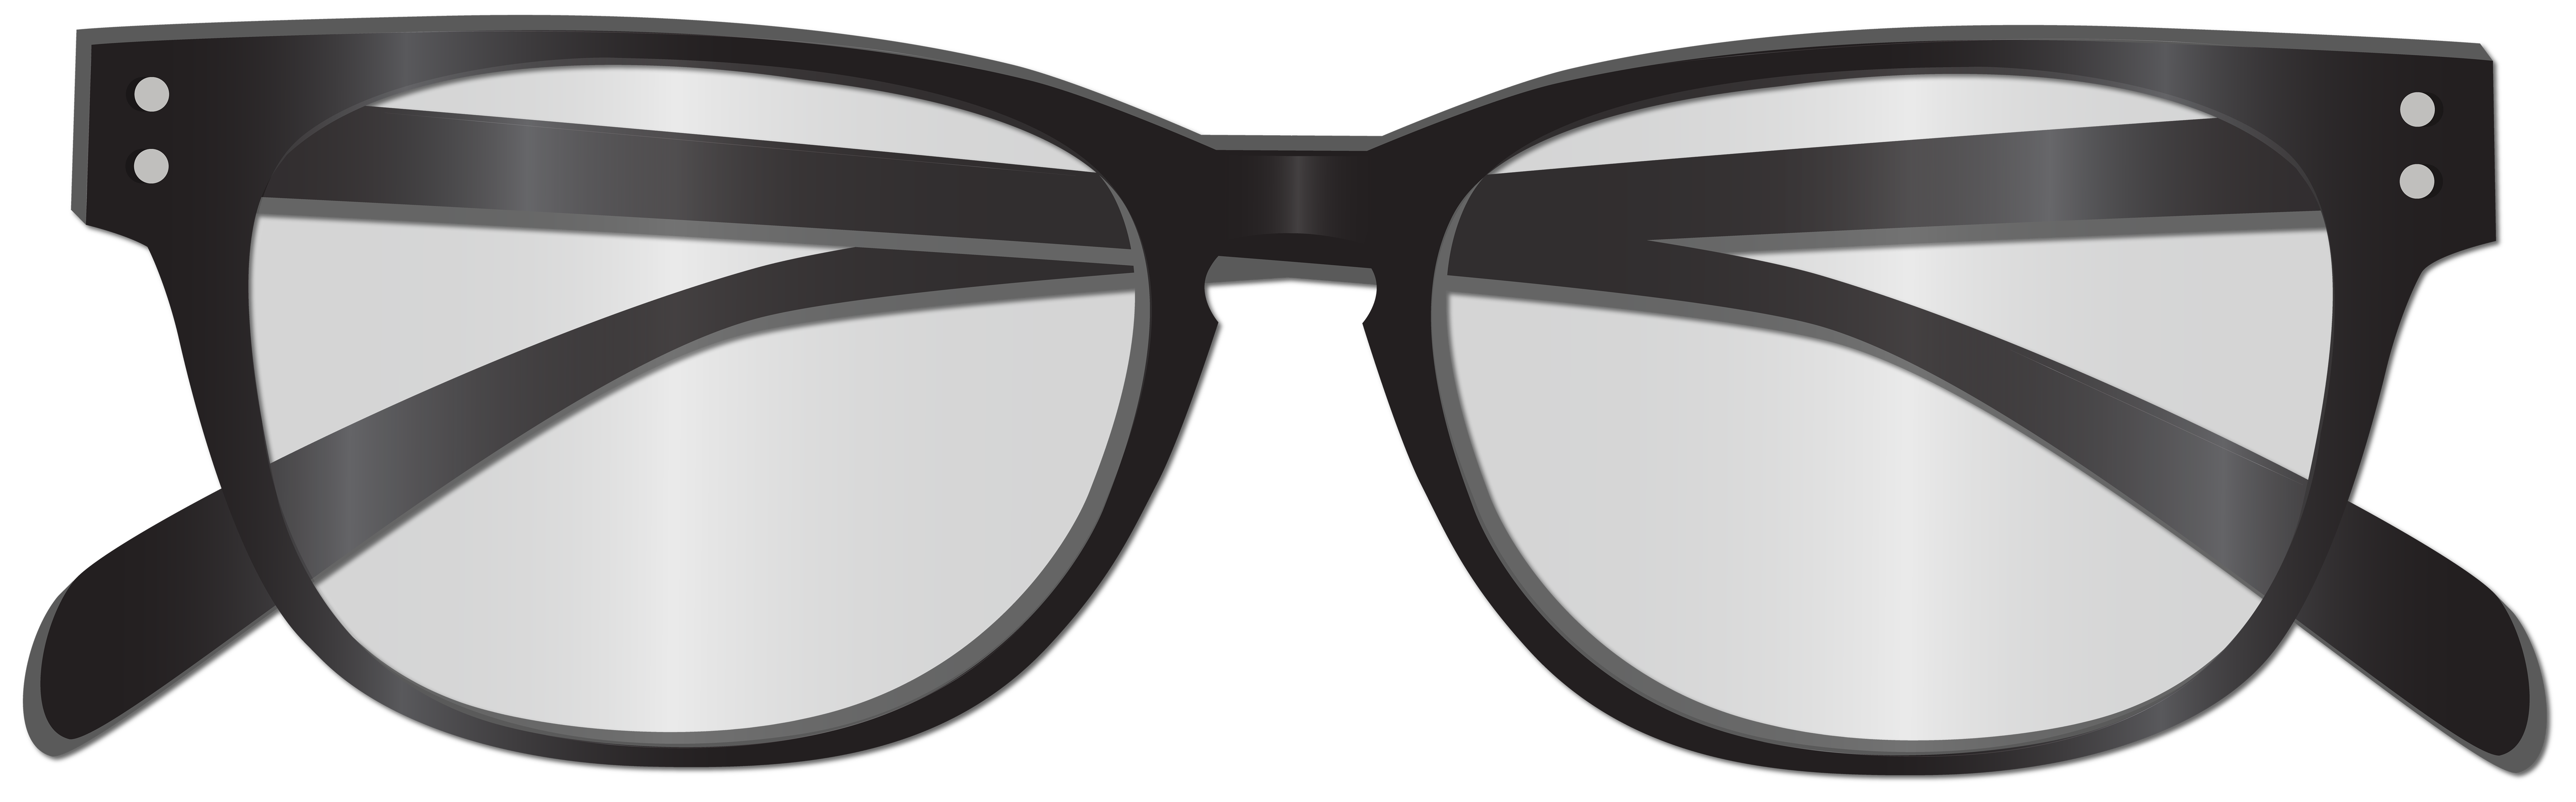 clipart glasses eyeglasses